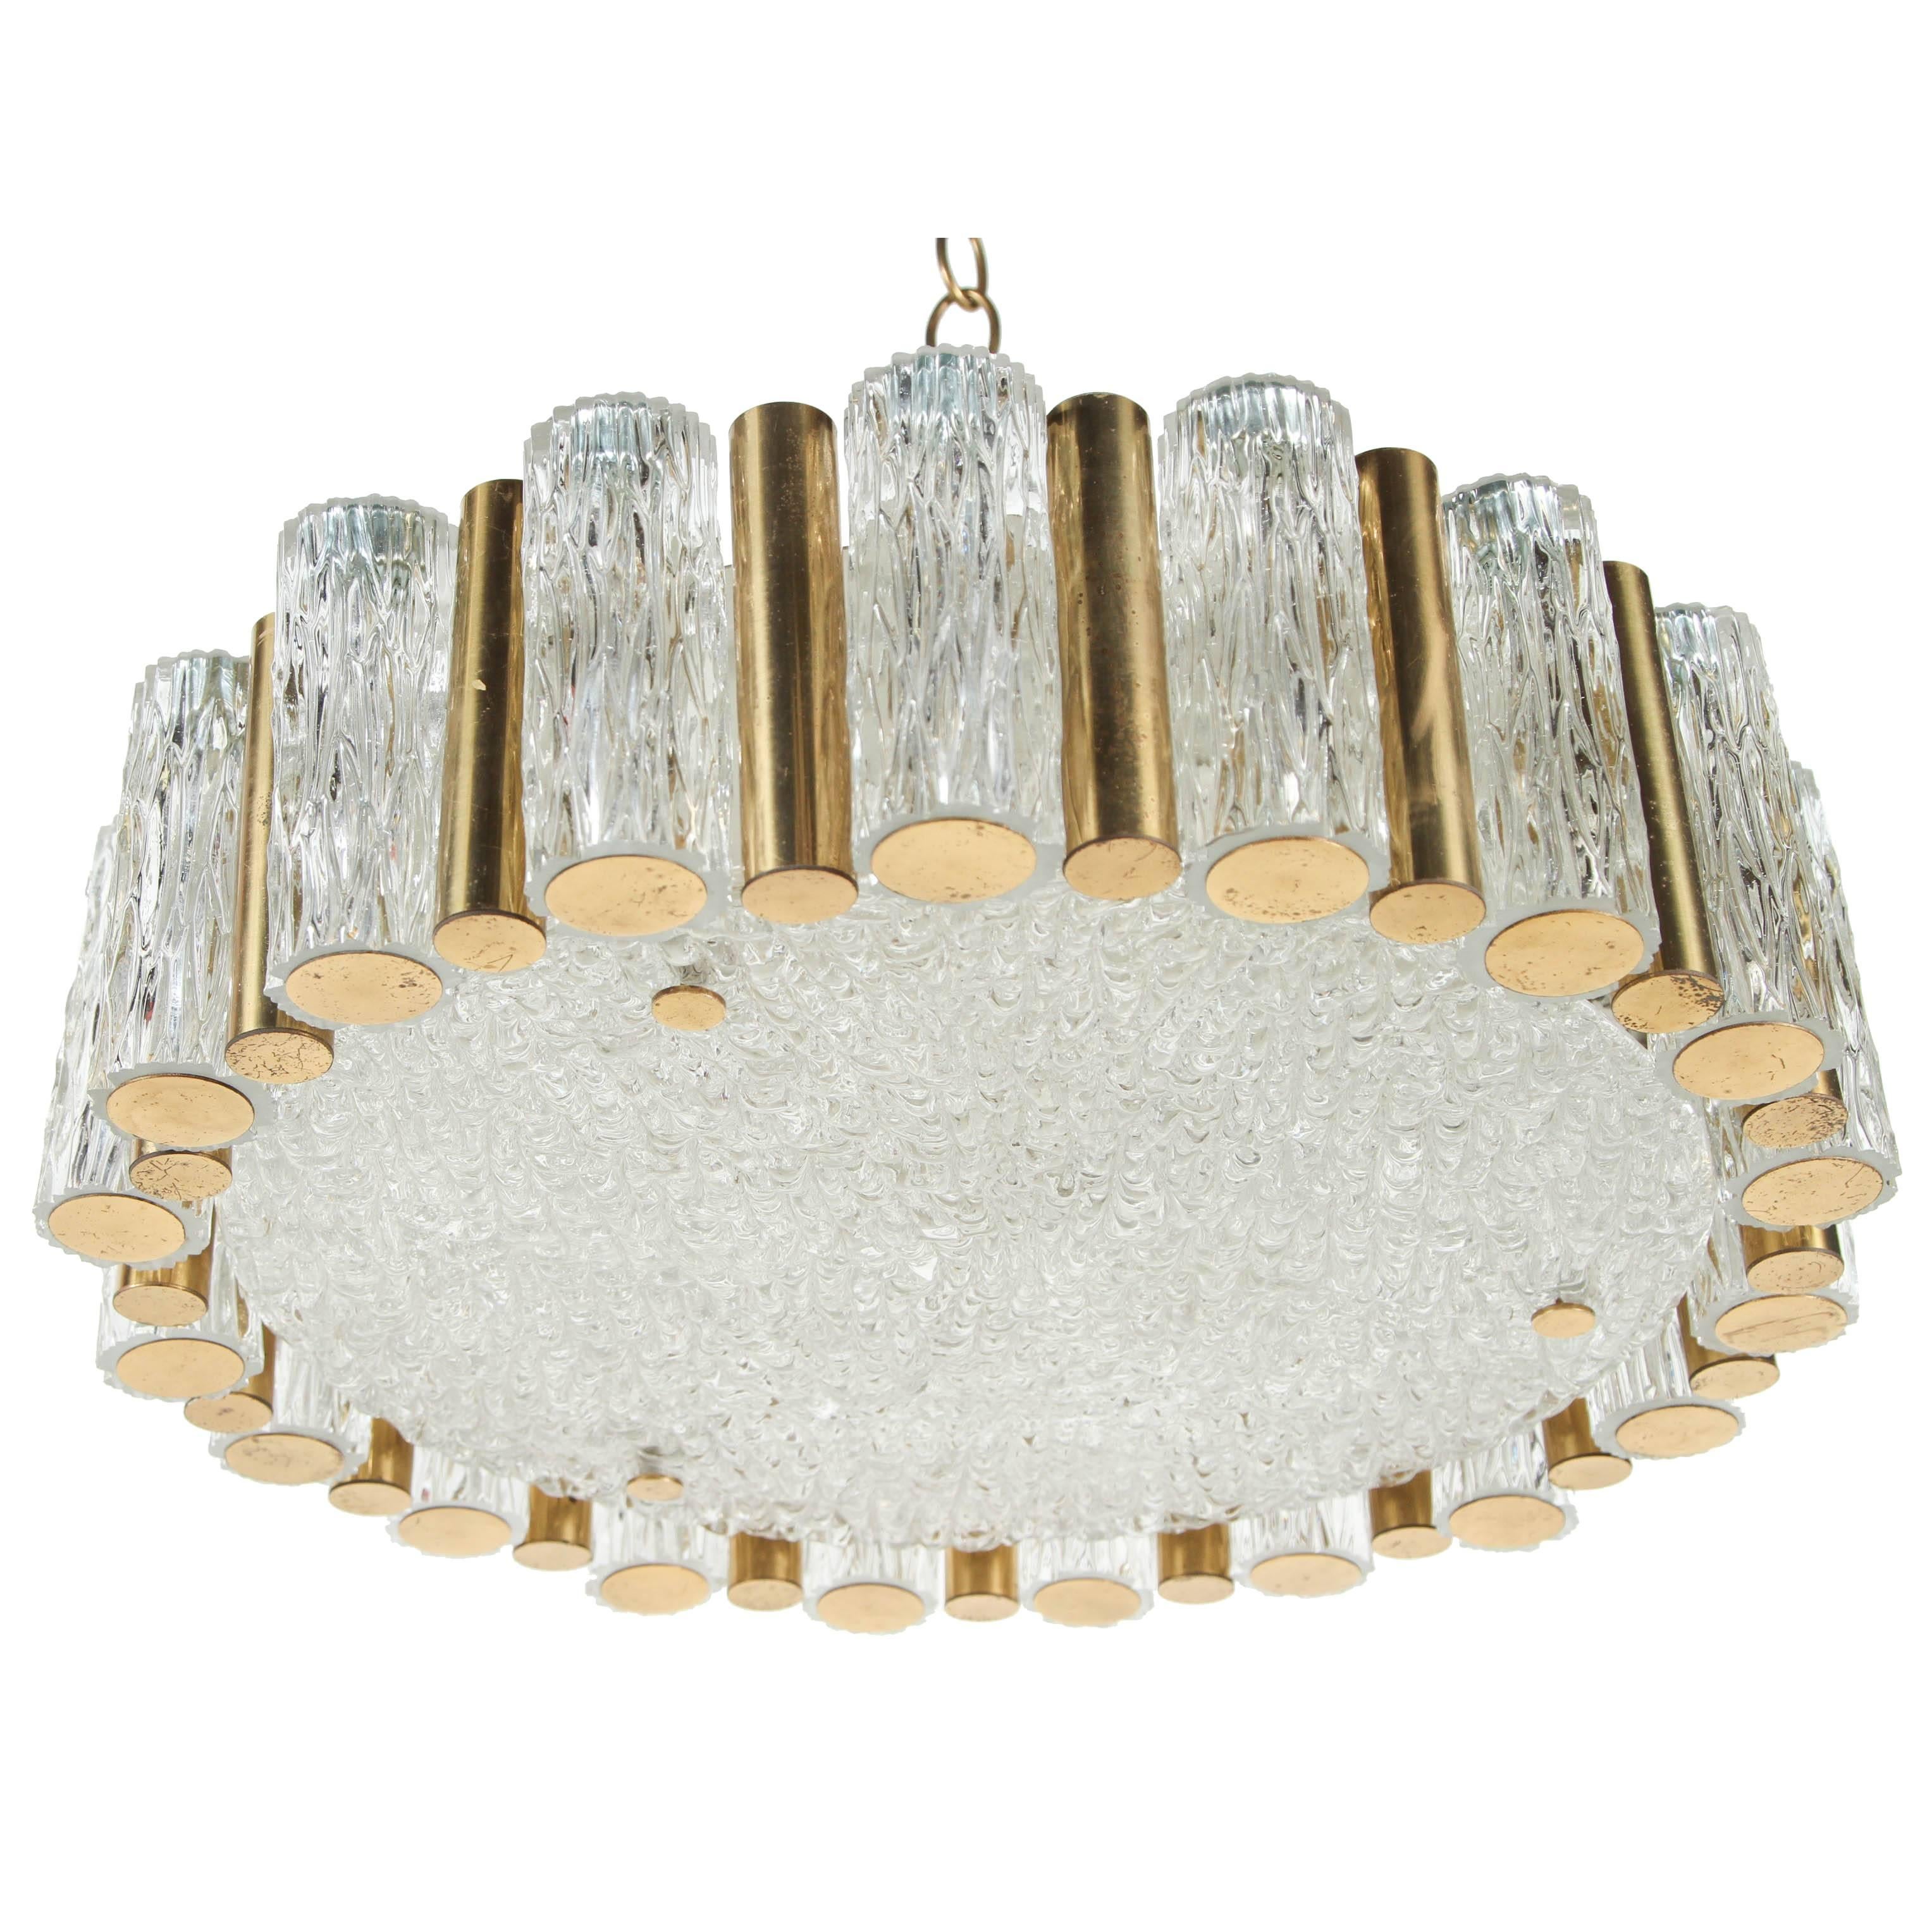 Stylish glass and brass pendant light.